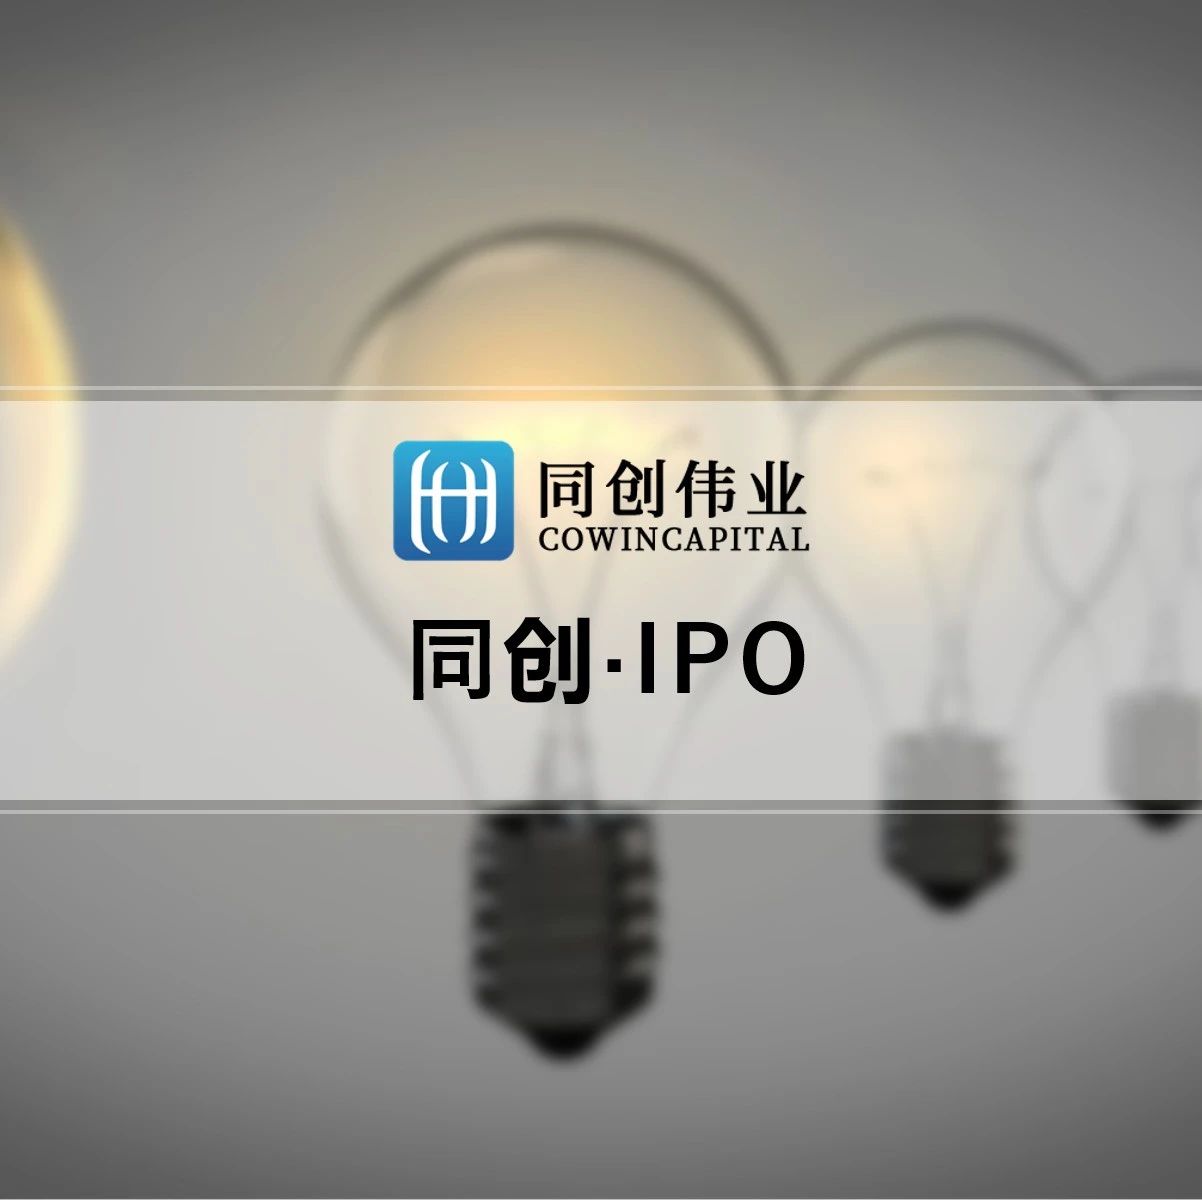 同创伟业成员企业「鑫信腾」创业板IPO过会